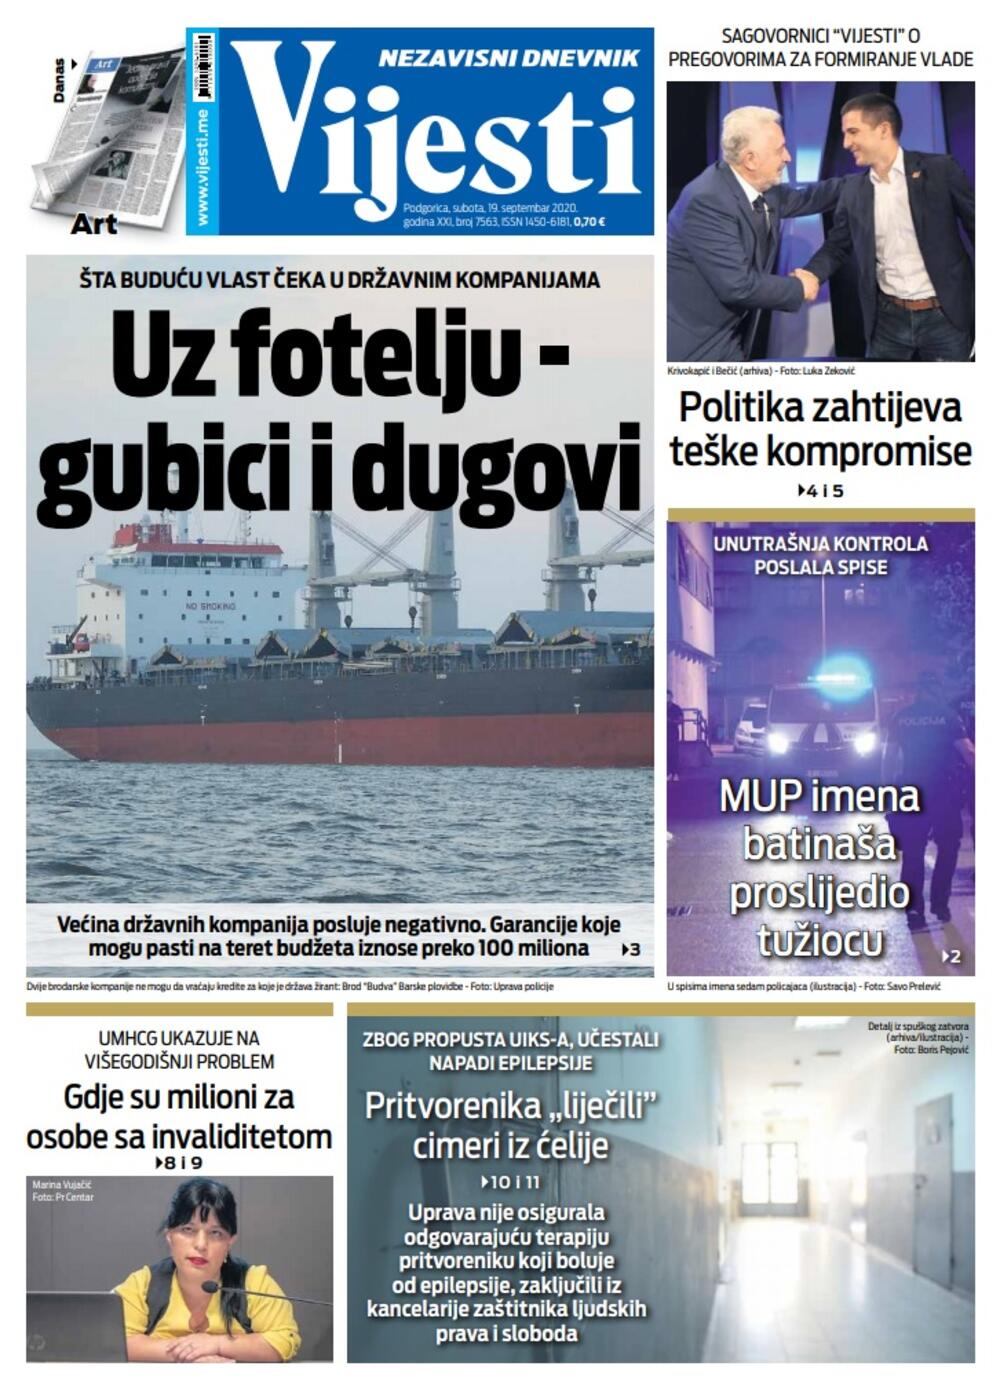 Naslovna strana "Vijesti" za 19. septembar 2020., Foto: Vijesti